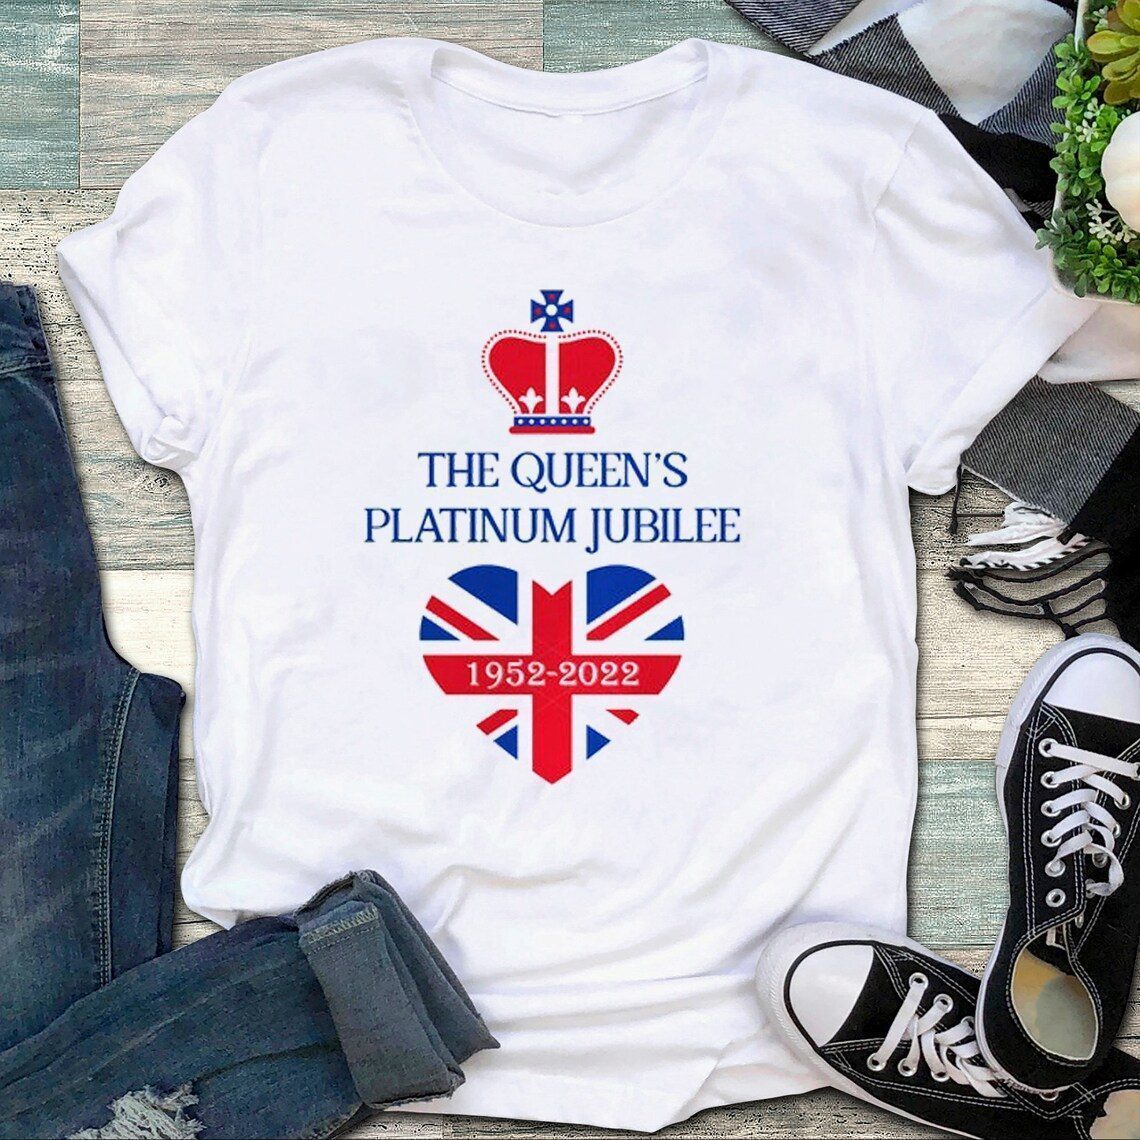 Queen Elizabeth Platinum Jubilee The Queen’s 2022 Tee shirt ...